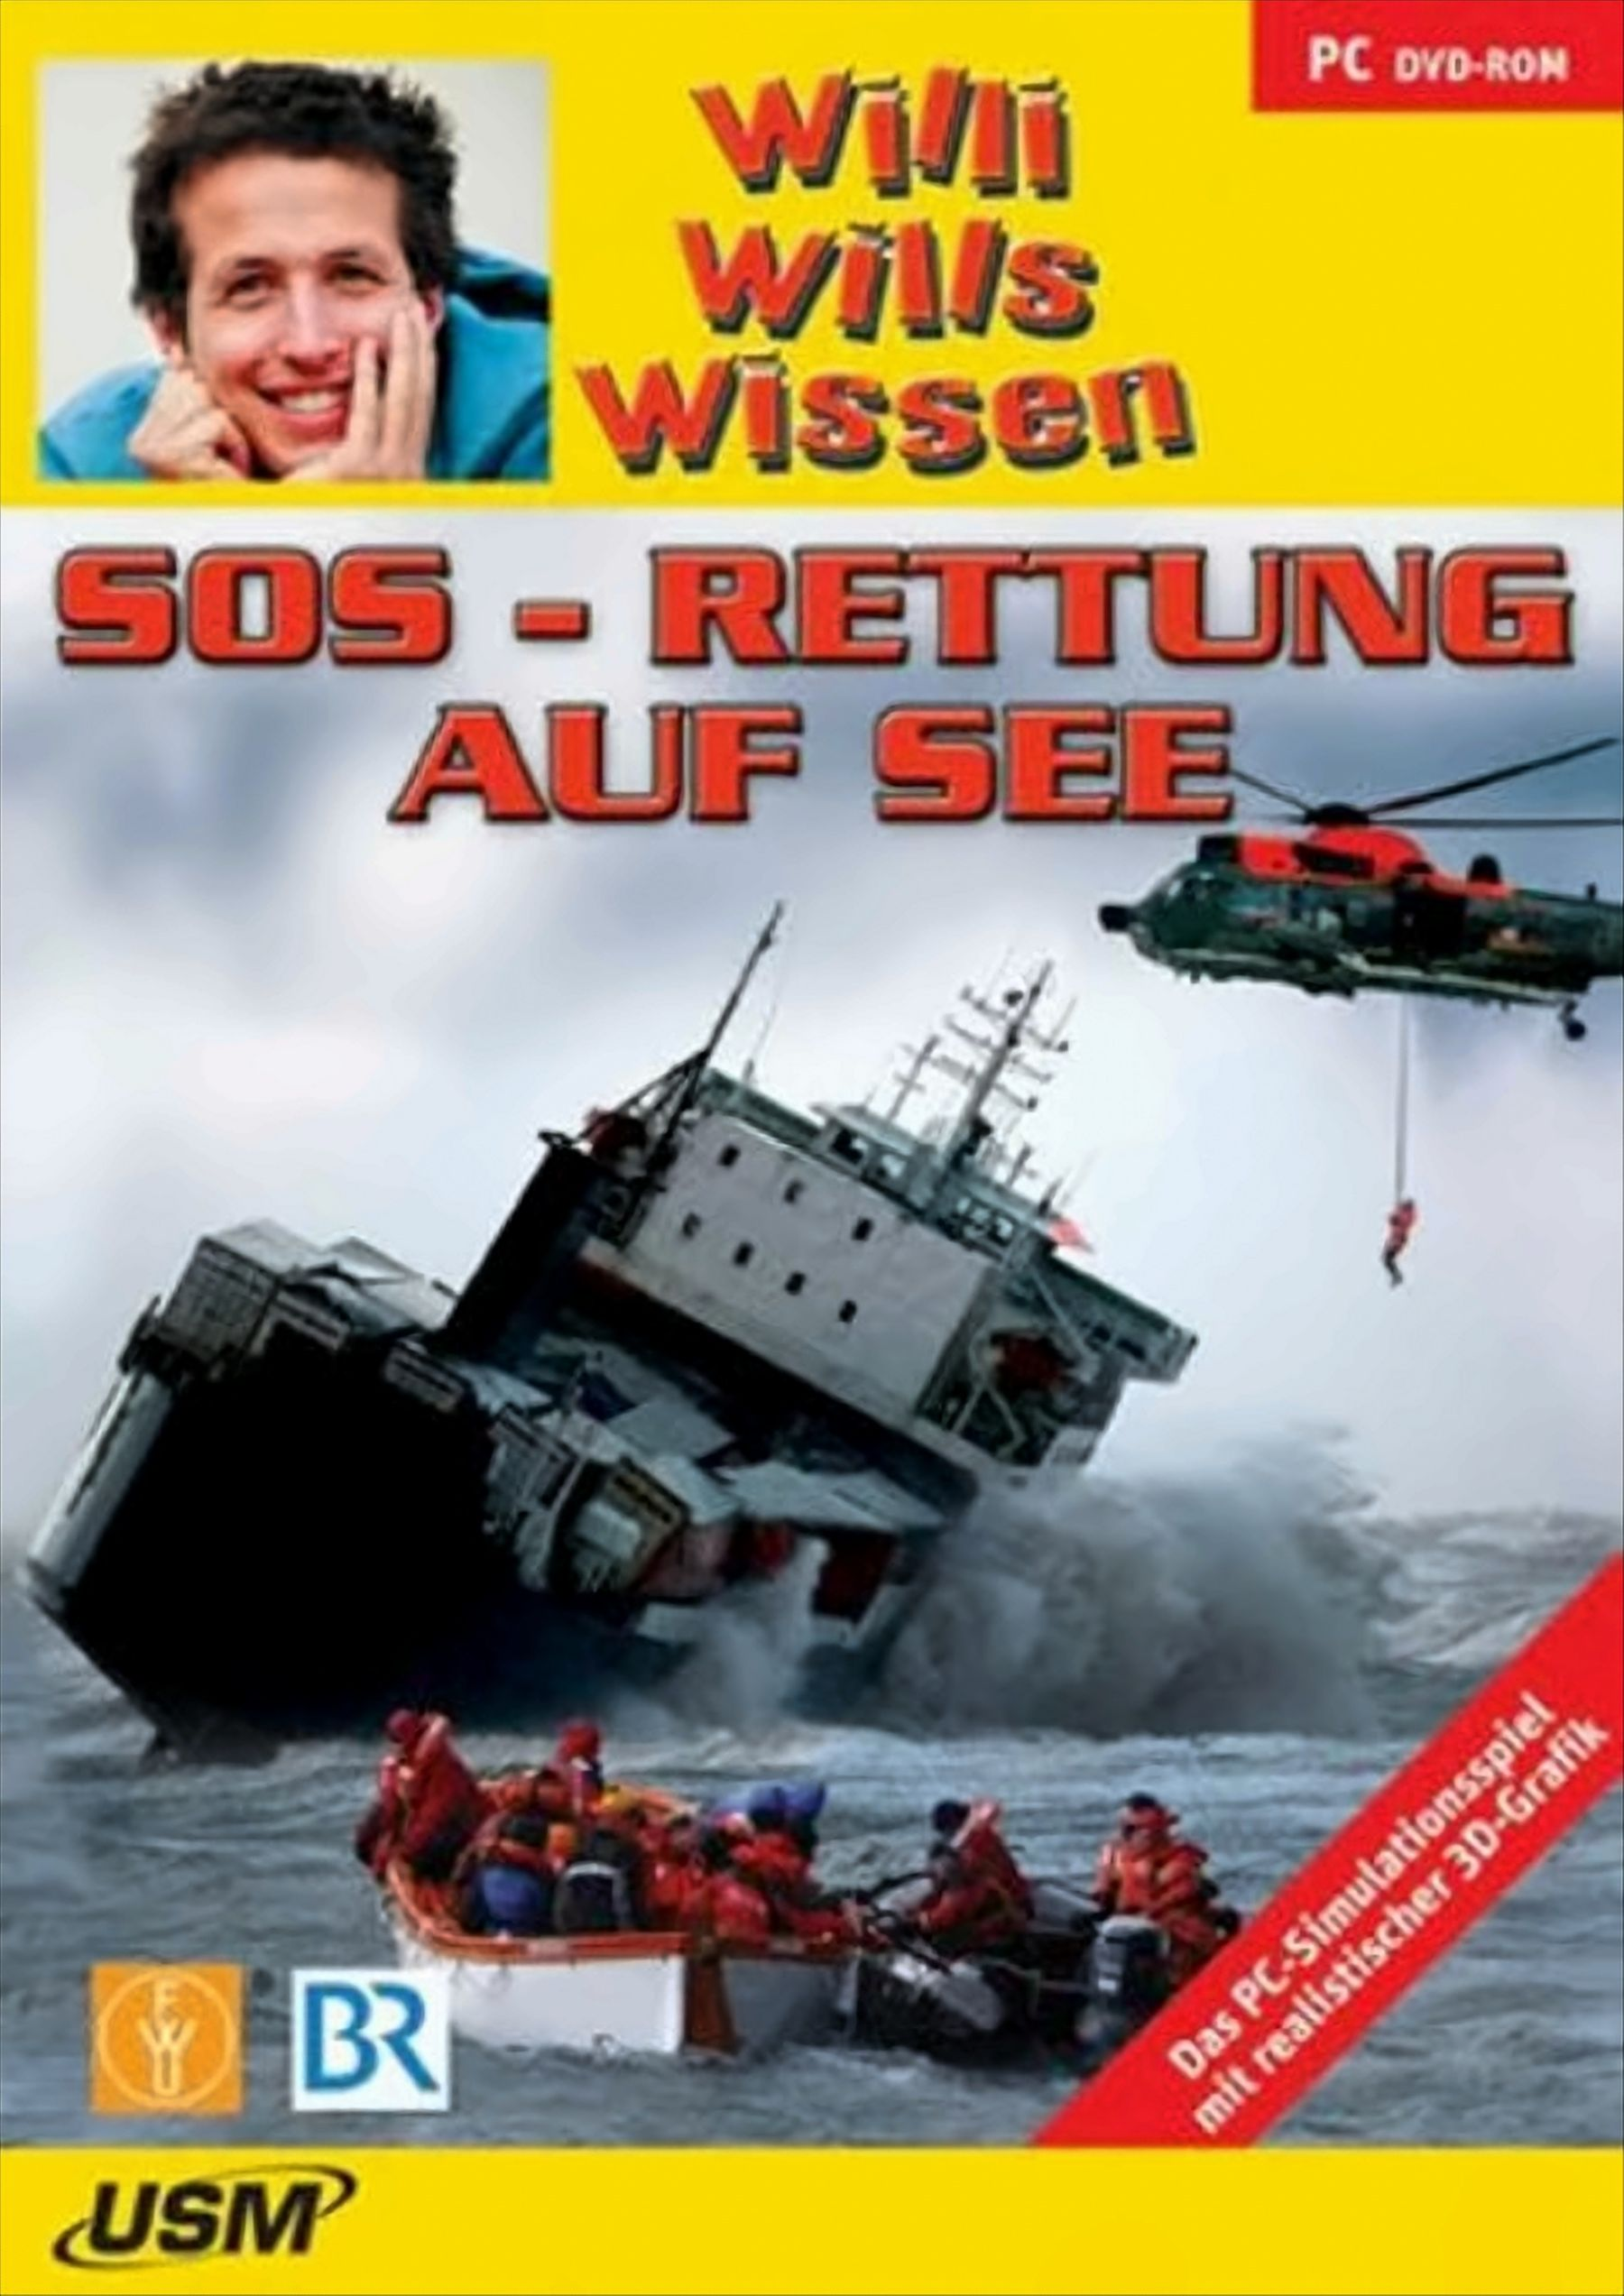 auf wissen: - - Willi wills See Rettung [PC] (DVD-ROM) SOS